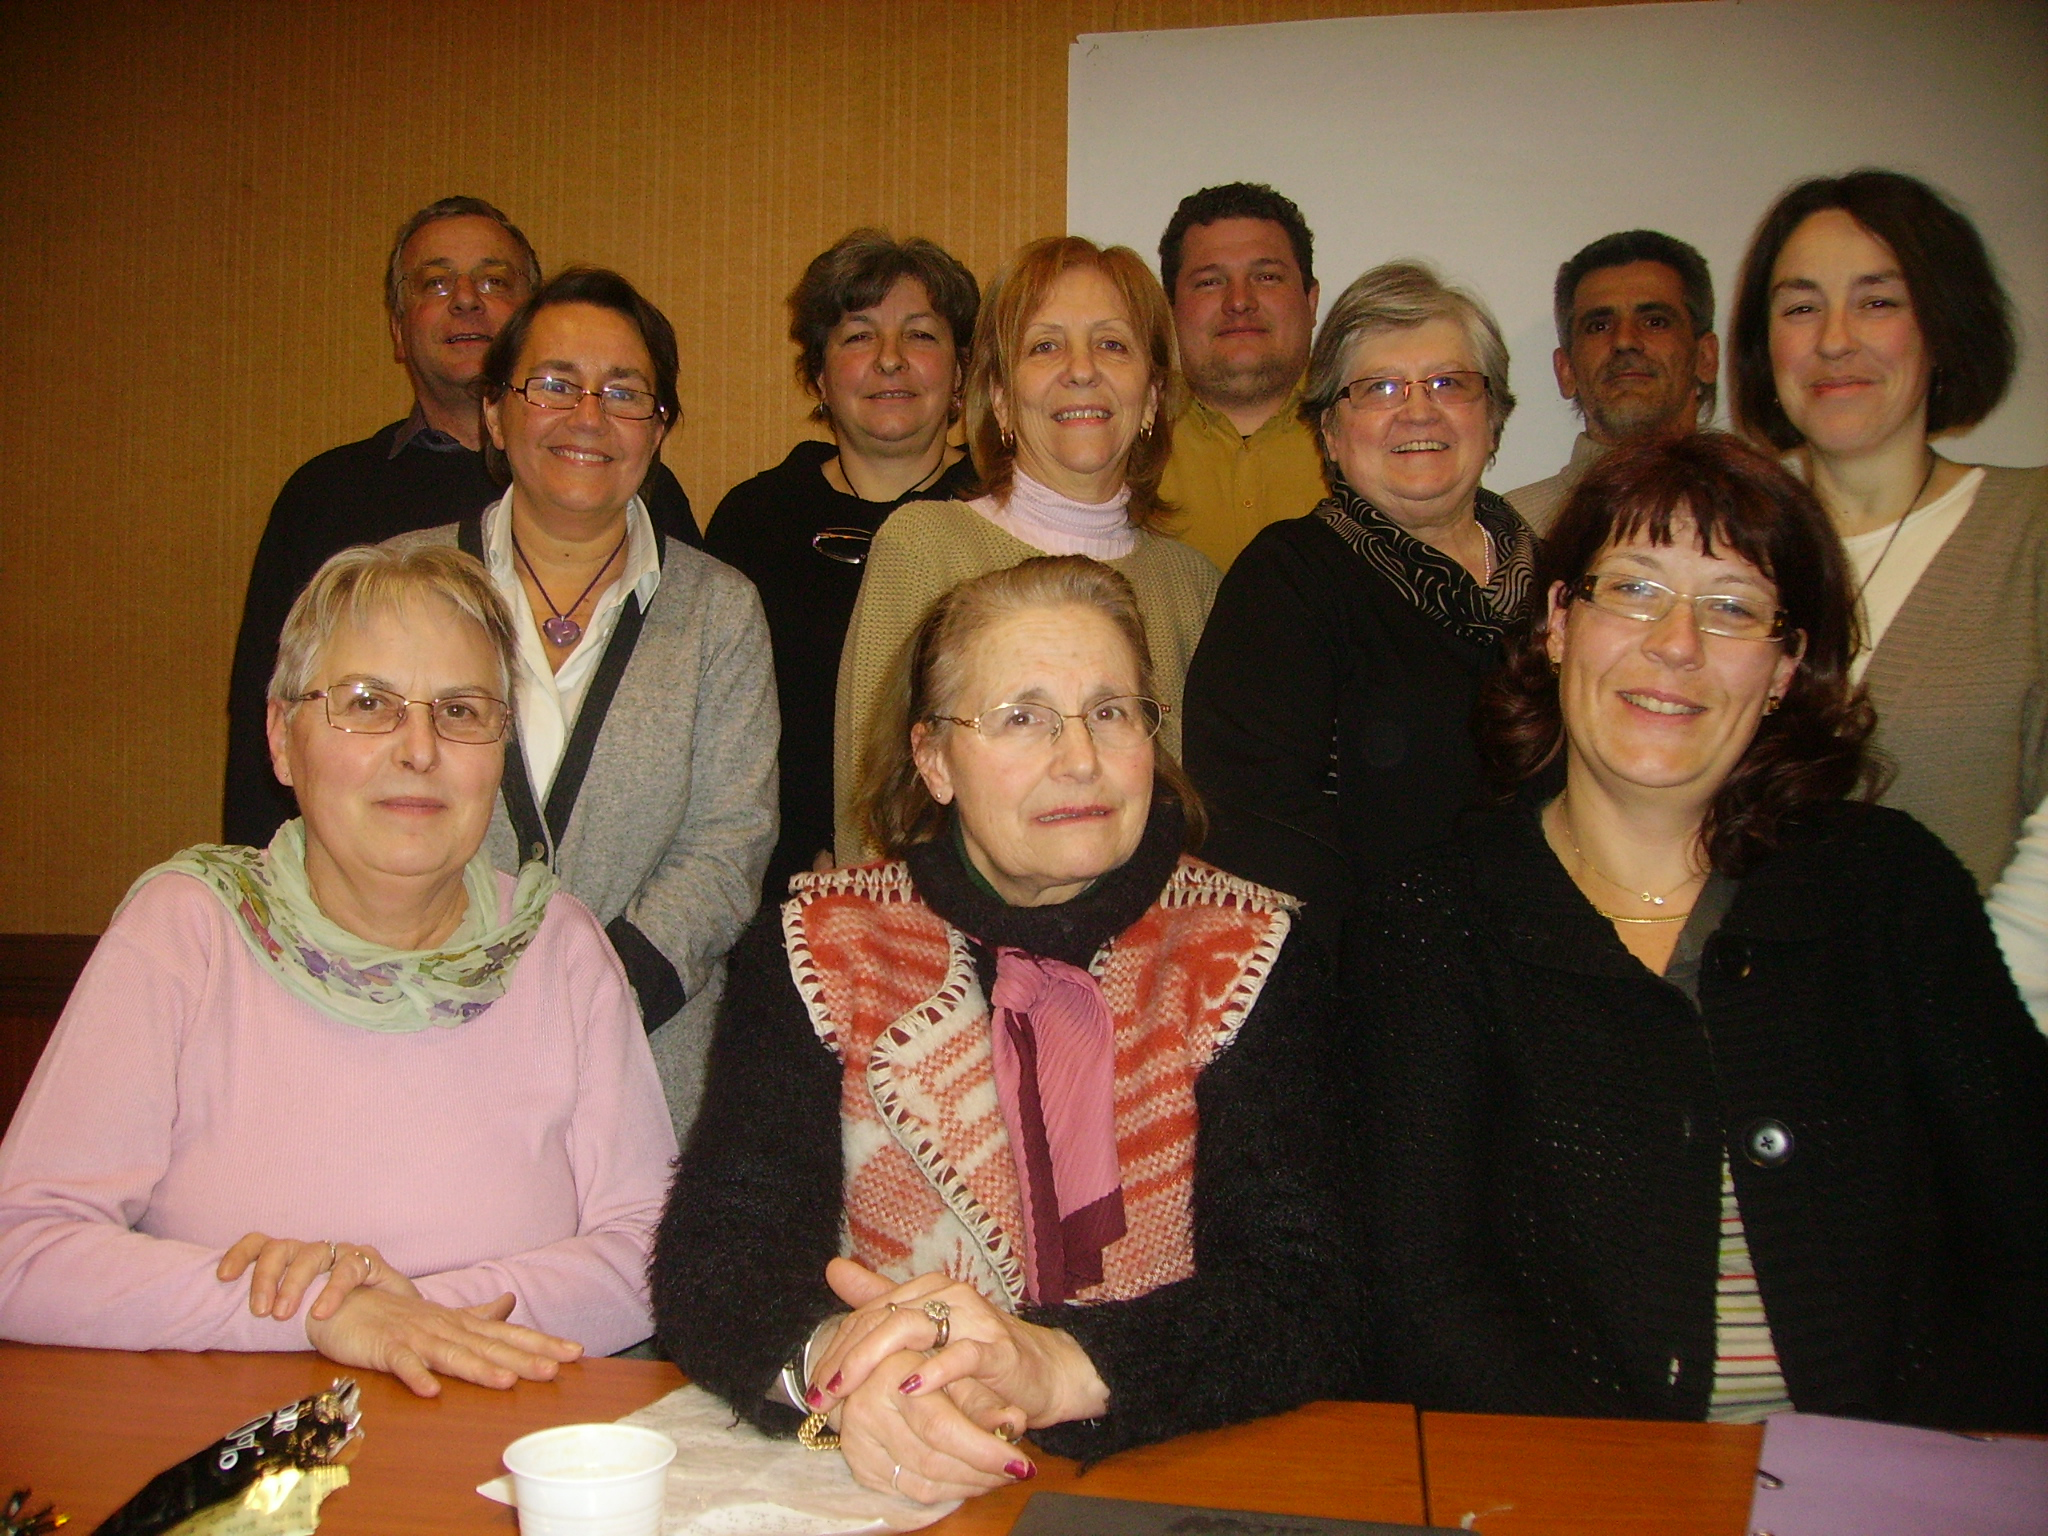 Reunion secteur Nord associations familiales Rhone 31 janvier 2011 